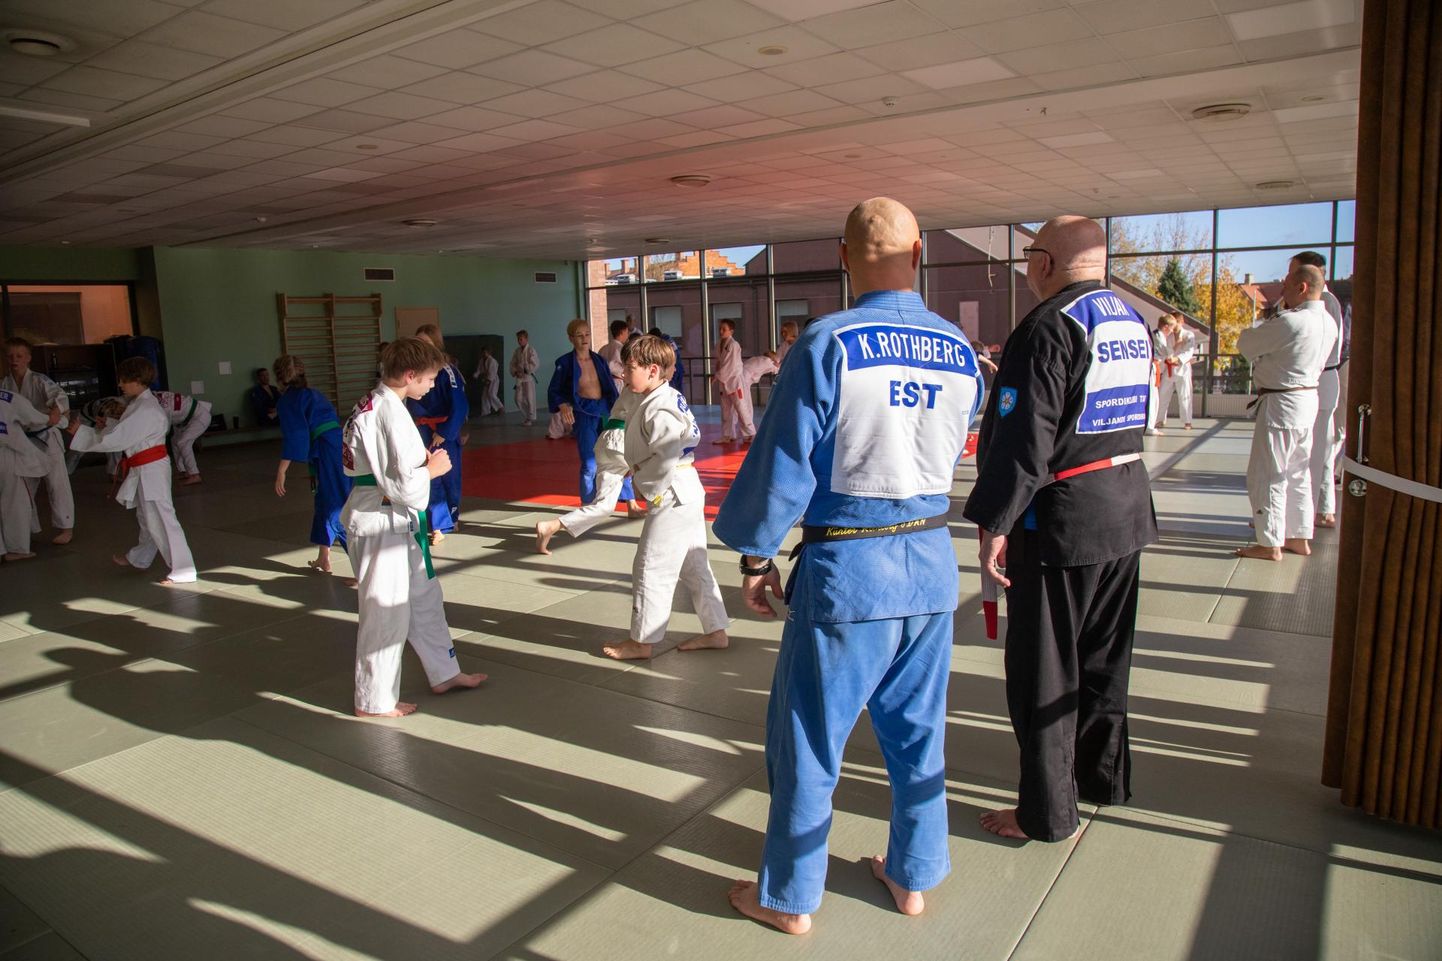 Oktoobri viimasel nädalavahetusel oli Tallinnas judoturniir "Rothberg Cup", mille korralduse taga on judoperekond Rothberg. Hiljuti käis Künter Rothberg ühes teiste judotreeneritega Viljandis treeninglaagris, sest siit on alguse saanud tema enda judokakarjäär.